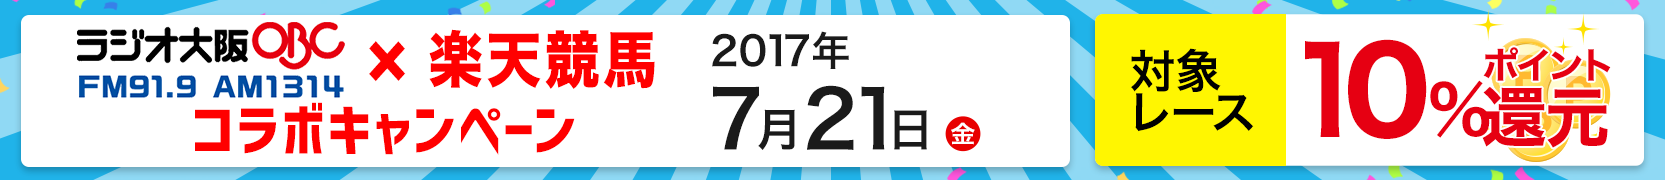 ラジオ大阪OBC×楽天競馬 コラボキャンペーン